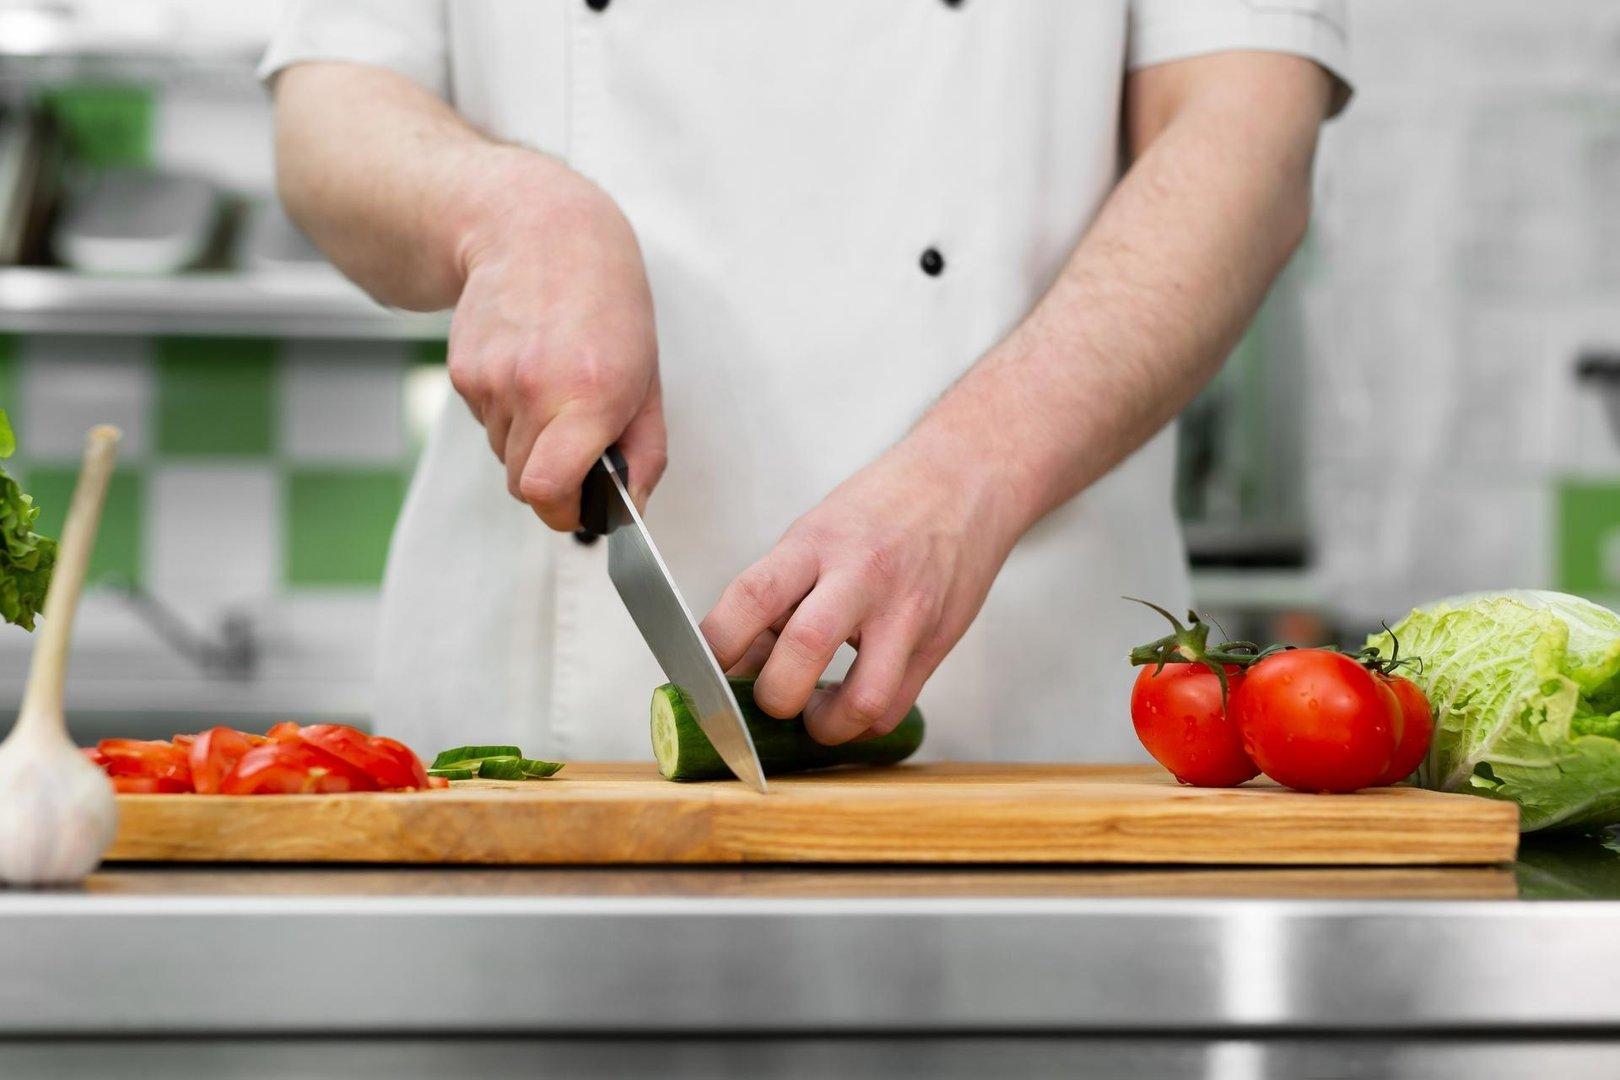 Alimentación sostenible en restaurantes y chefs: cómo reducir el impacto ambiental - Cover Image